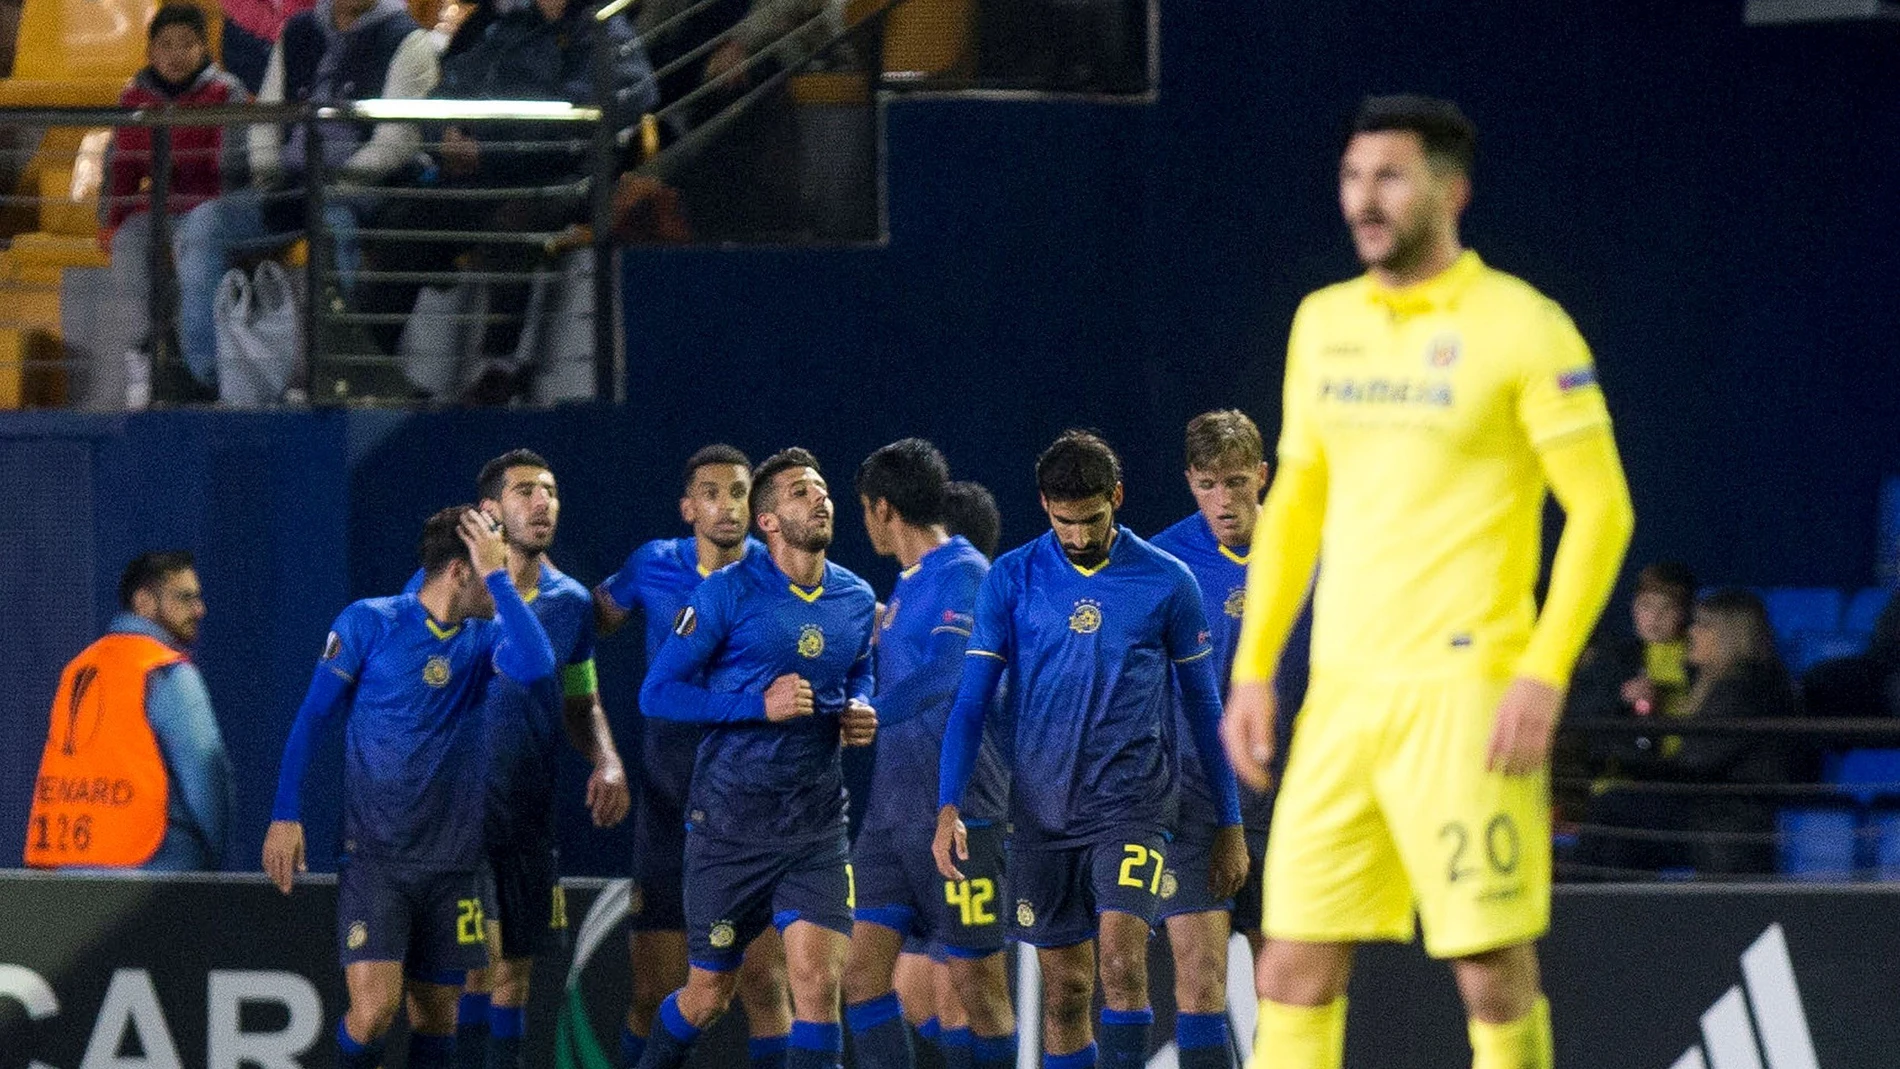 El Maccabi celebra su gol ante el Villarreal